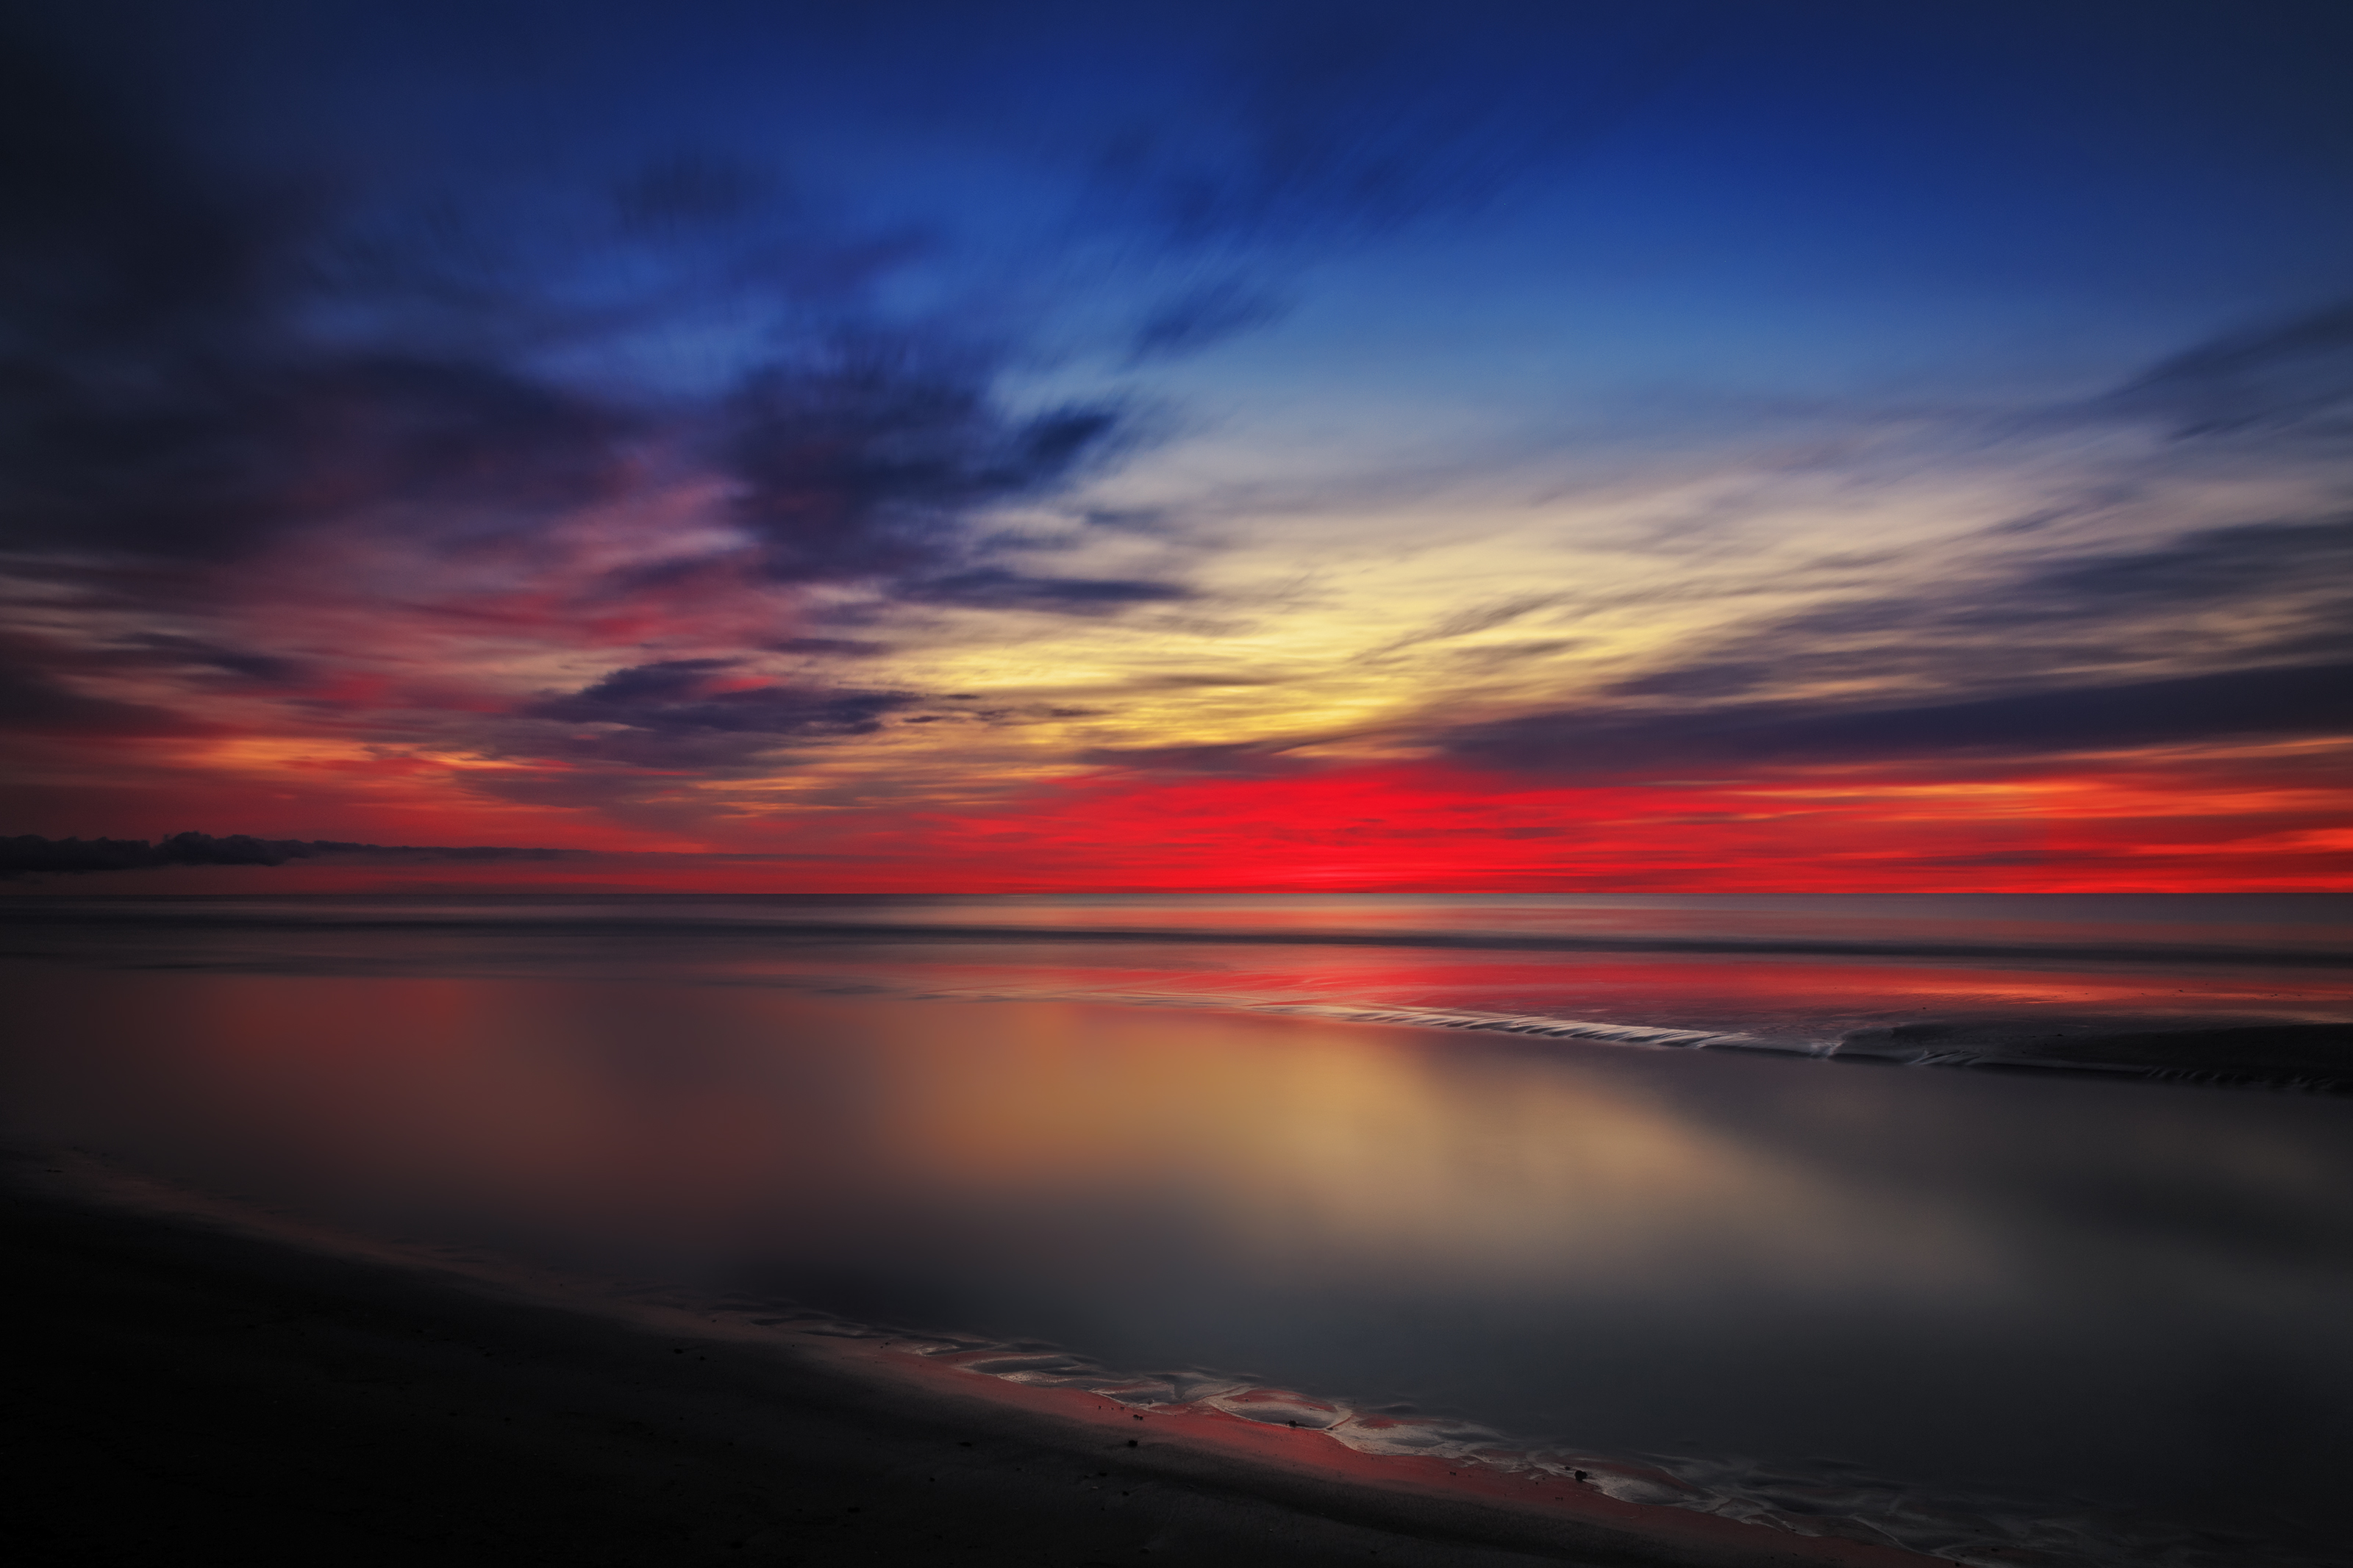 Norlev strand - after sunset